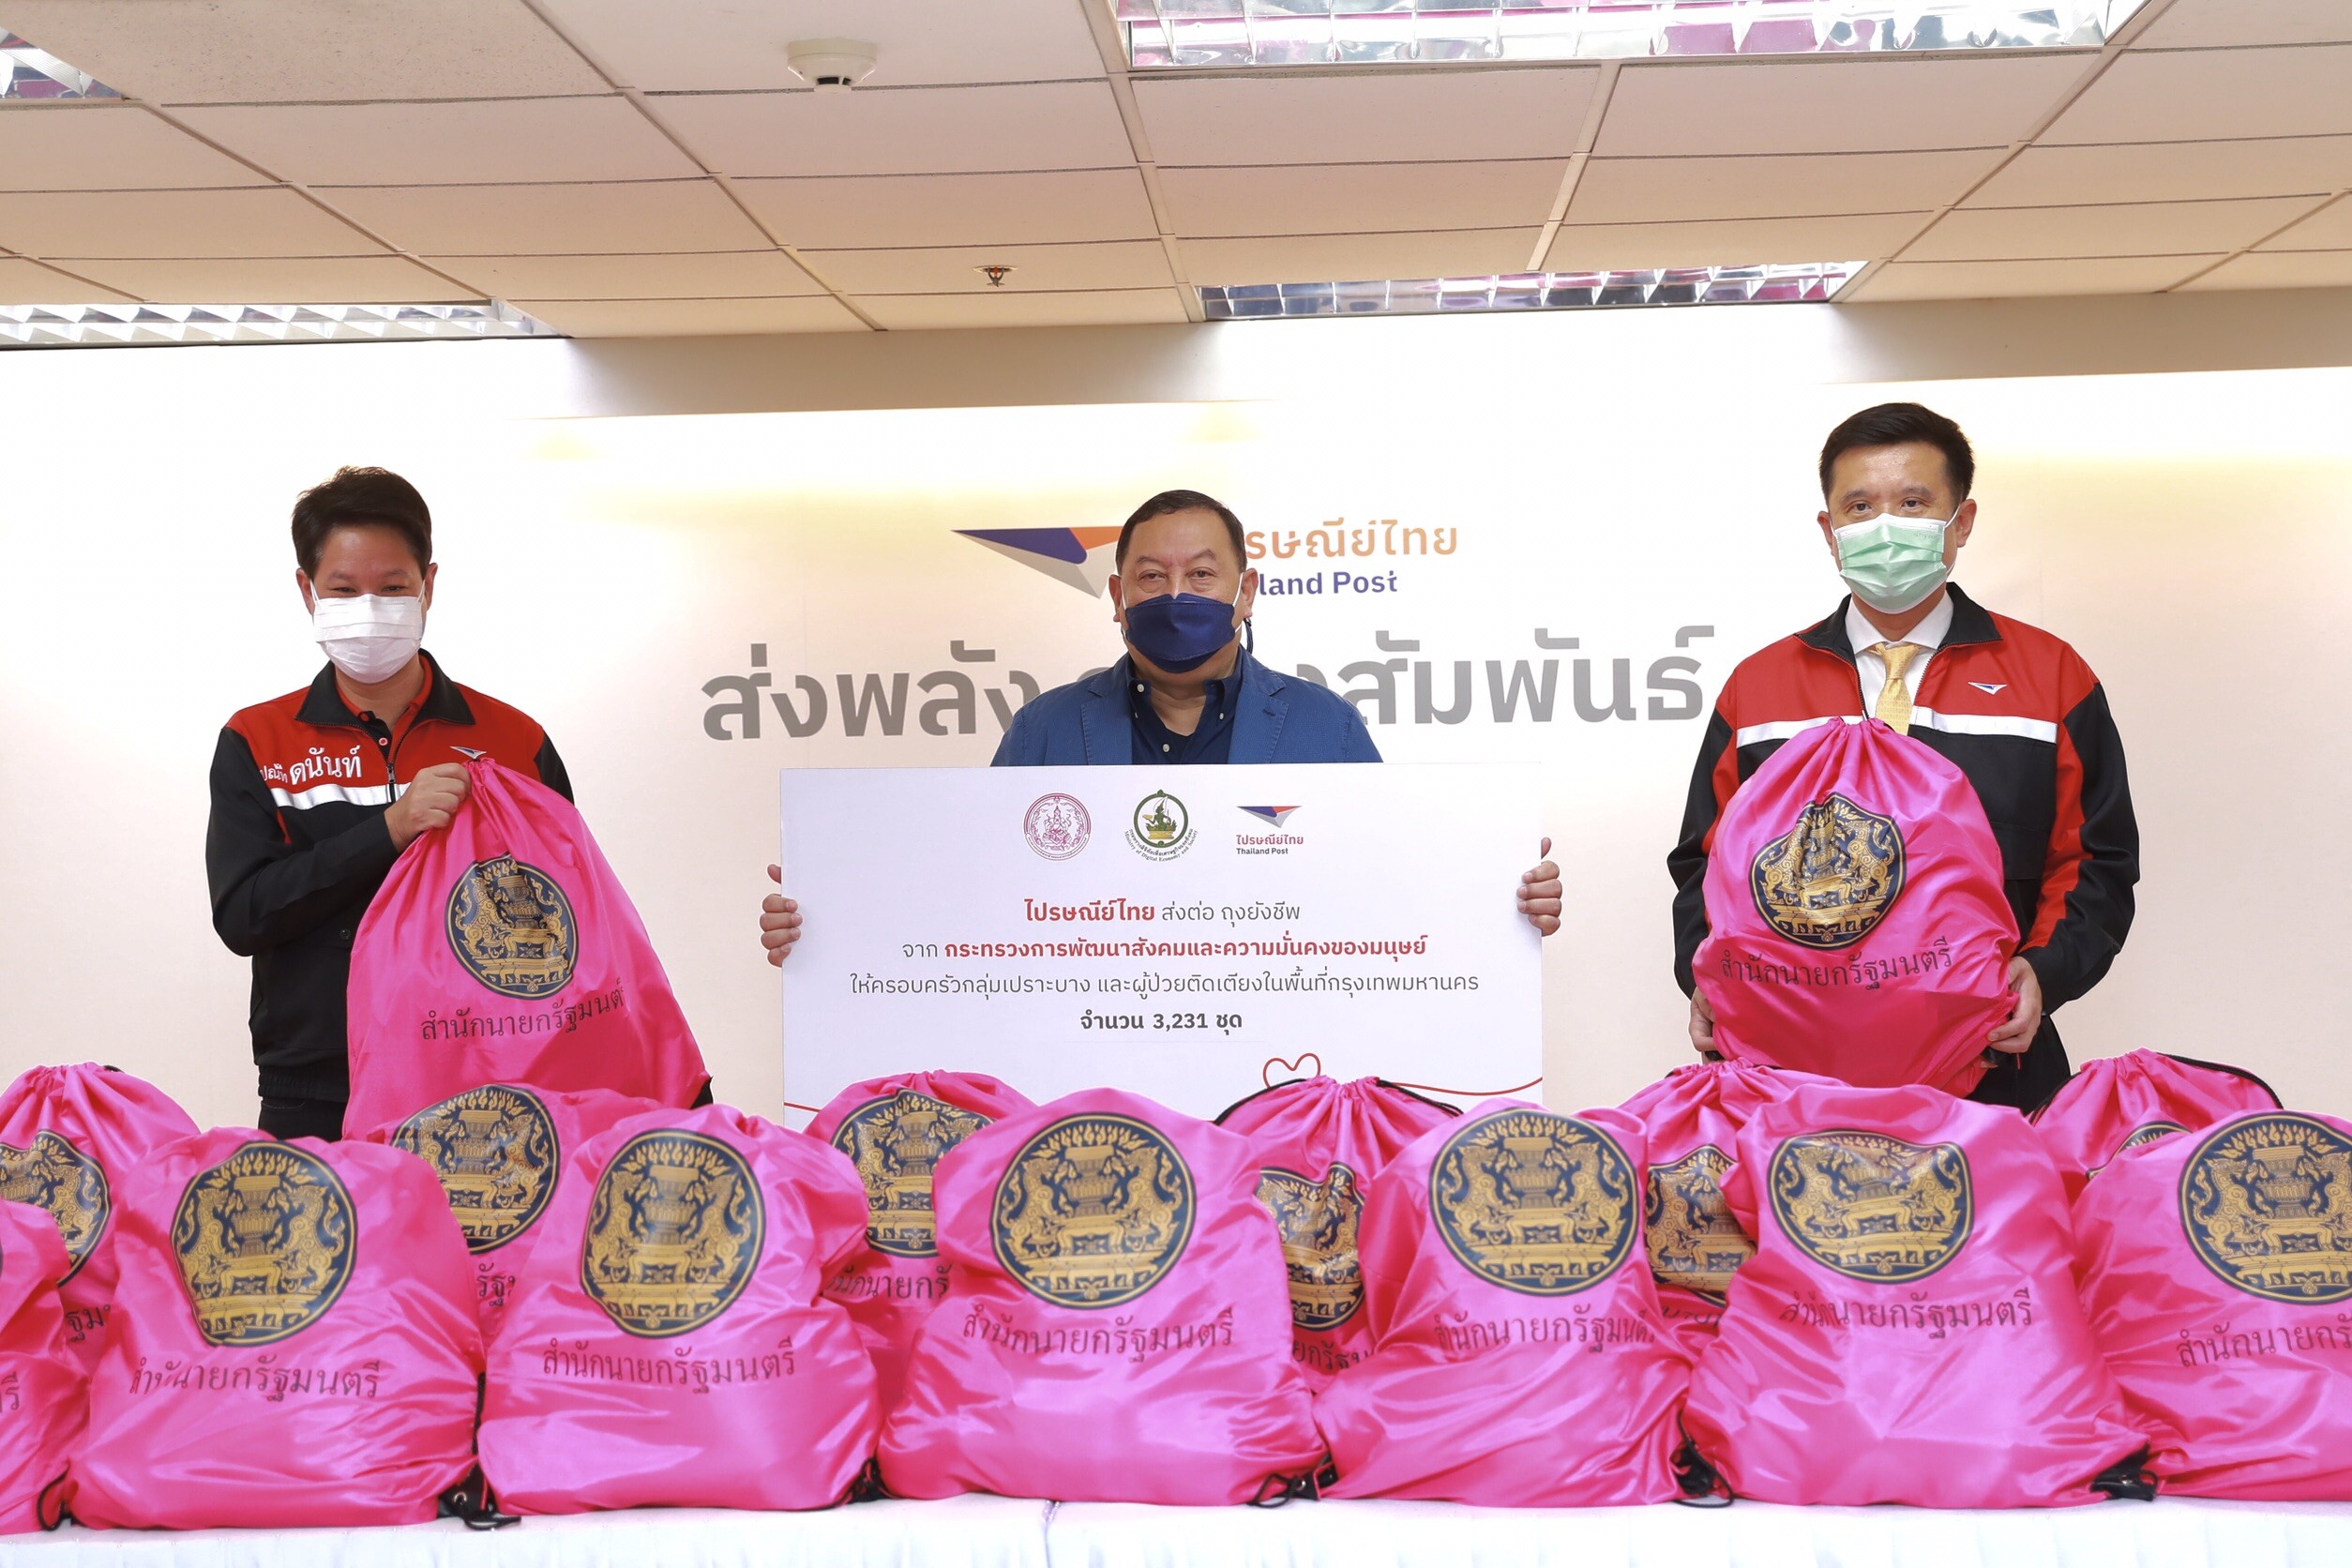 "ชัยวุฒิ" มอบไปรษณีย์ไทยหนุน พม. ส่งถุงน้ำใจมอบความรัก ความห่วงใยช่วยกลุ่มเปราะบาง-ผู้ป่วยใน กทม.